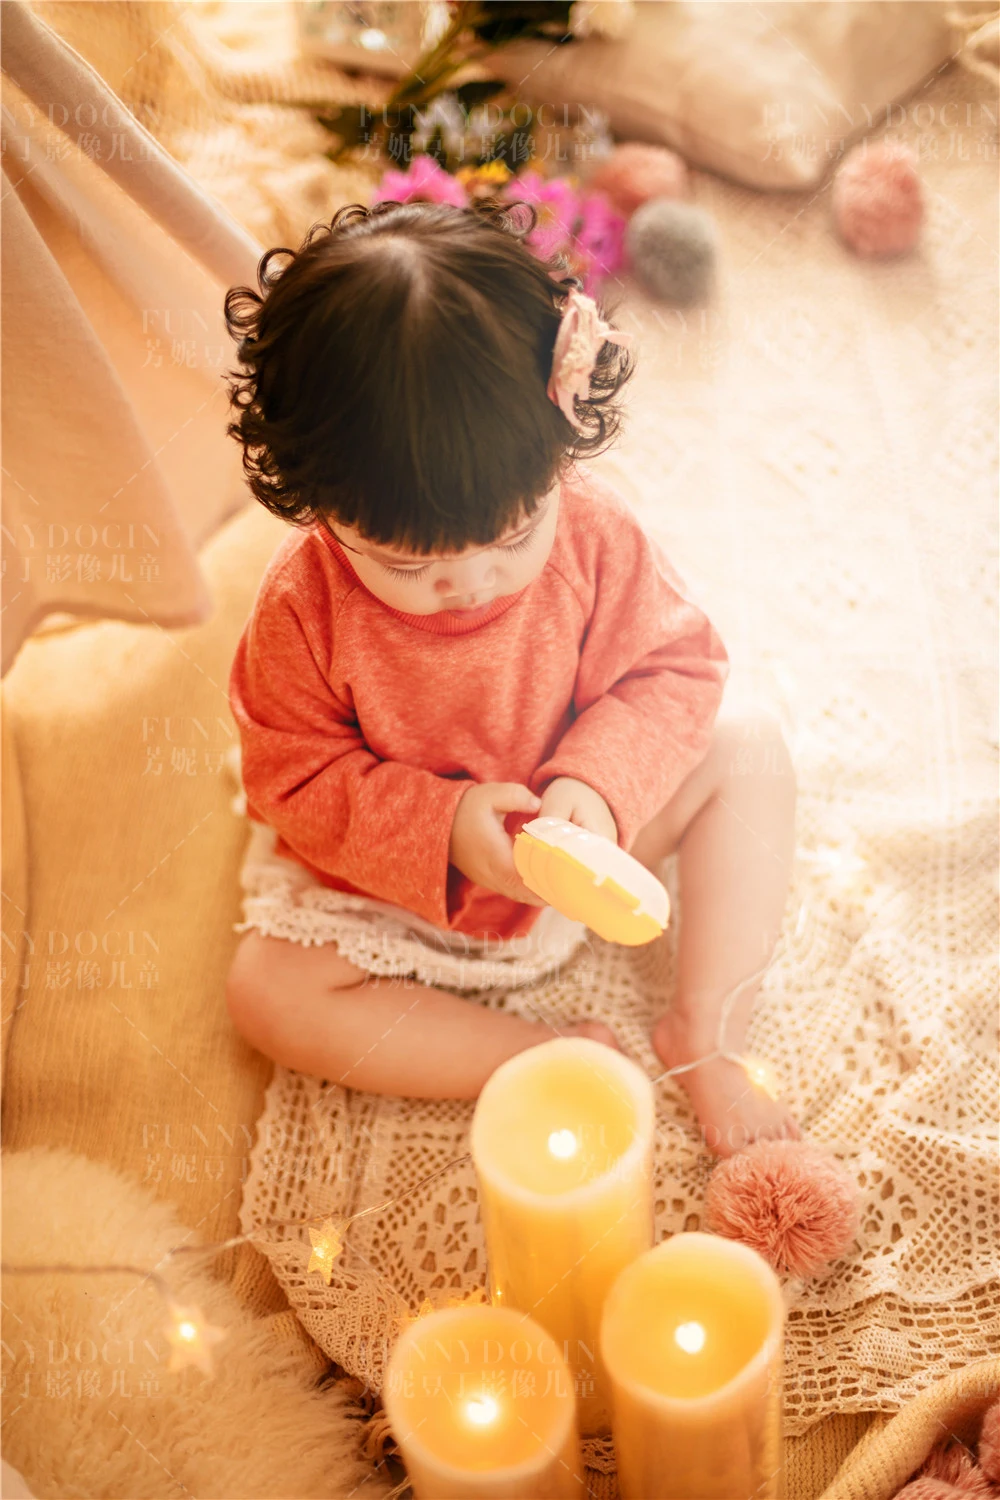 芳妮豆丁儿童摄影 ❤魔力橙色☀温暖你的秋日➷